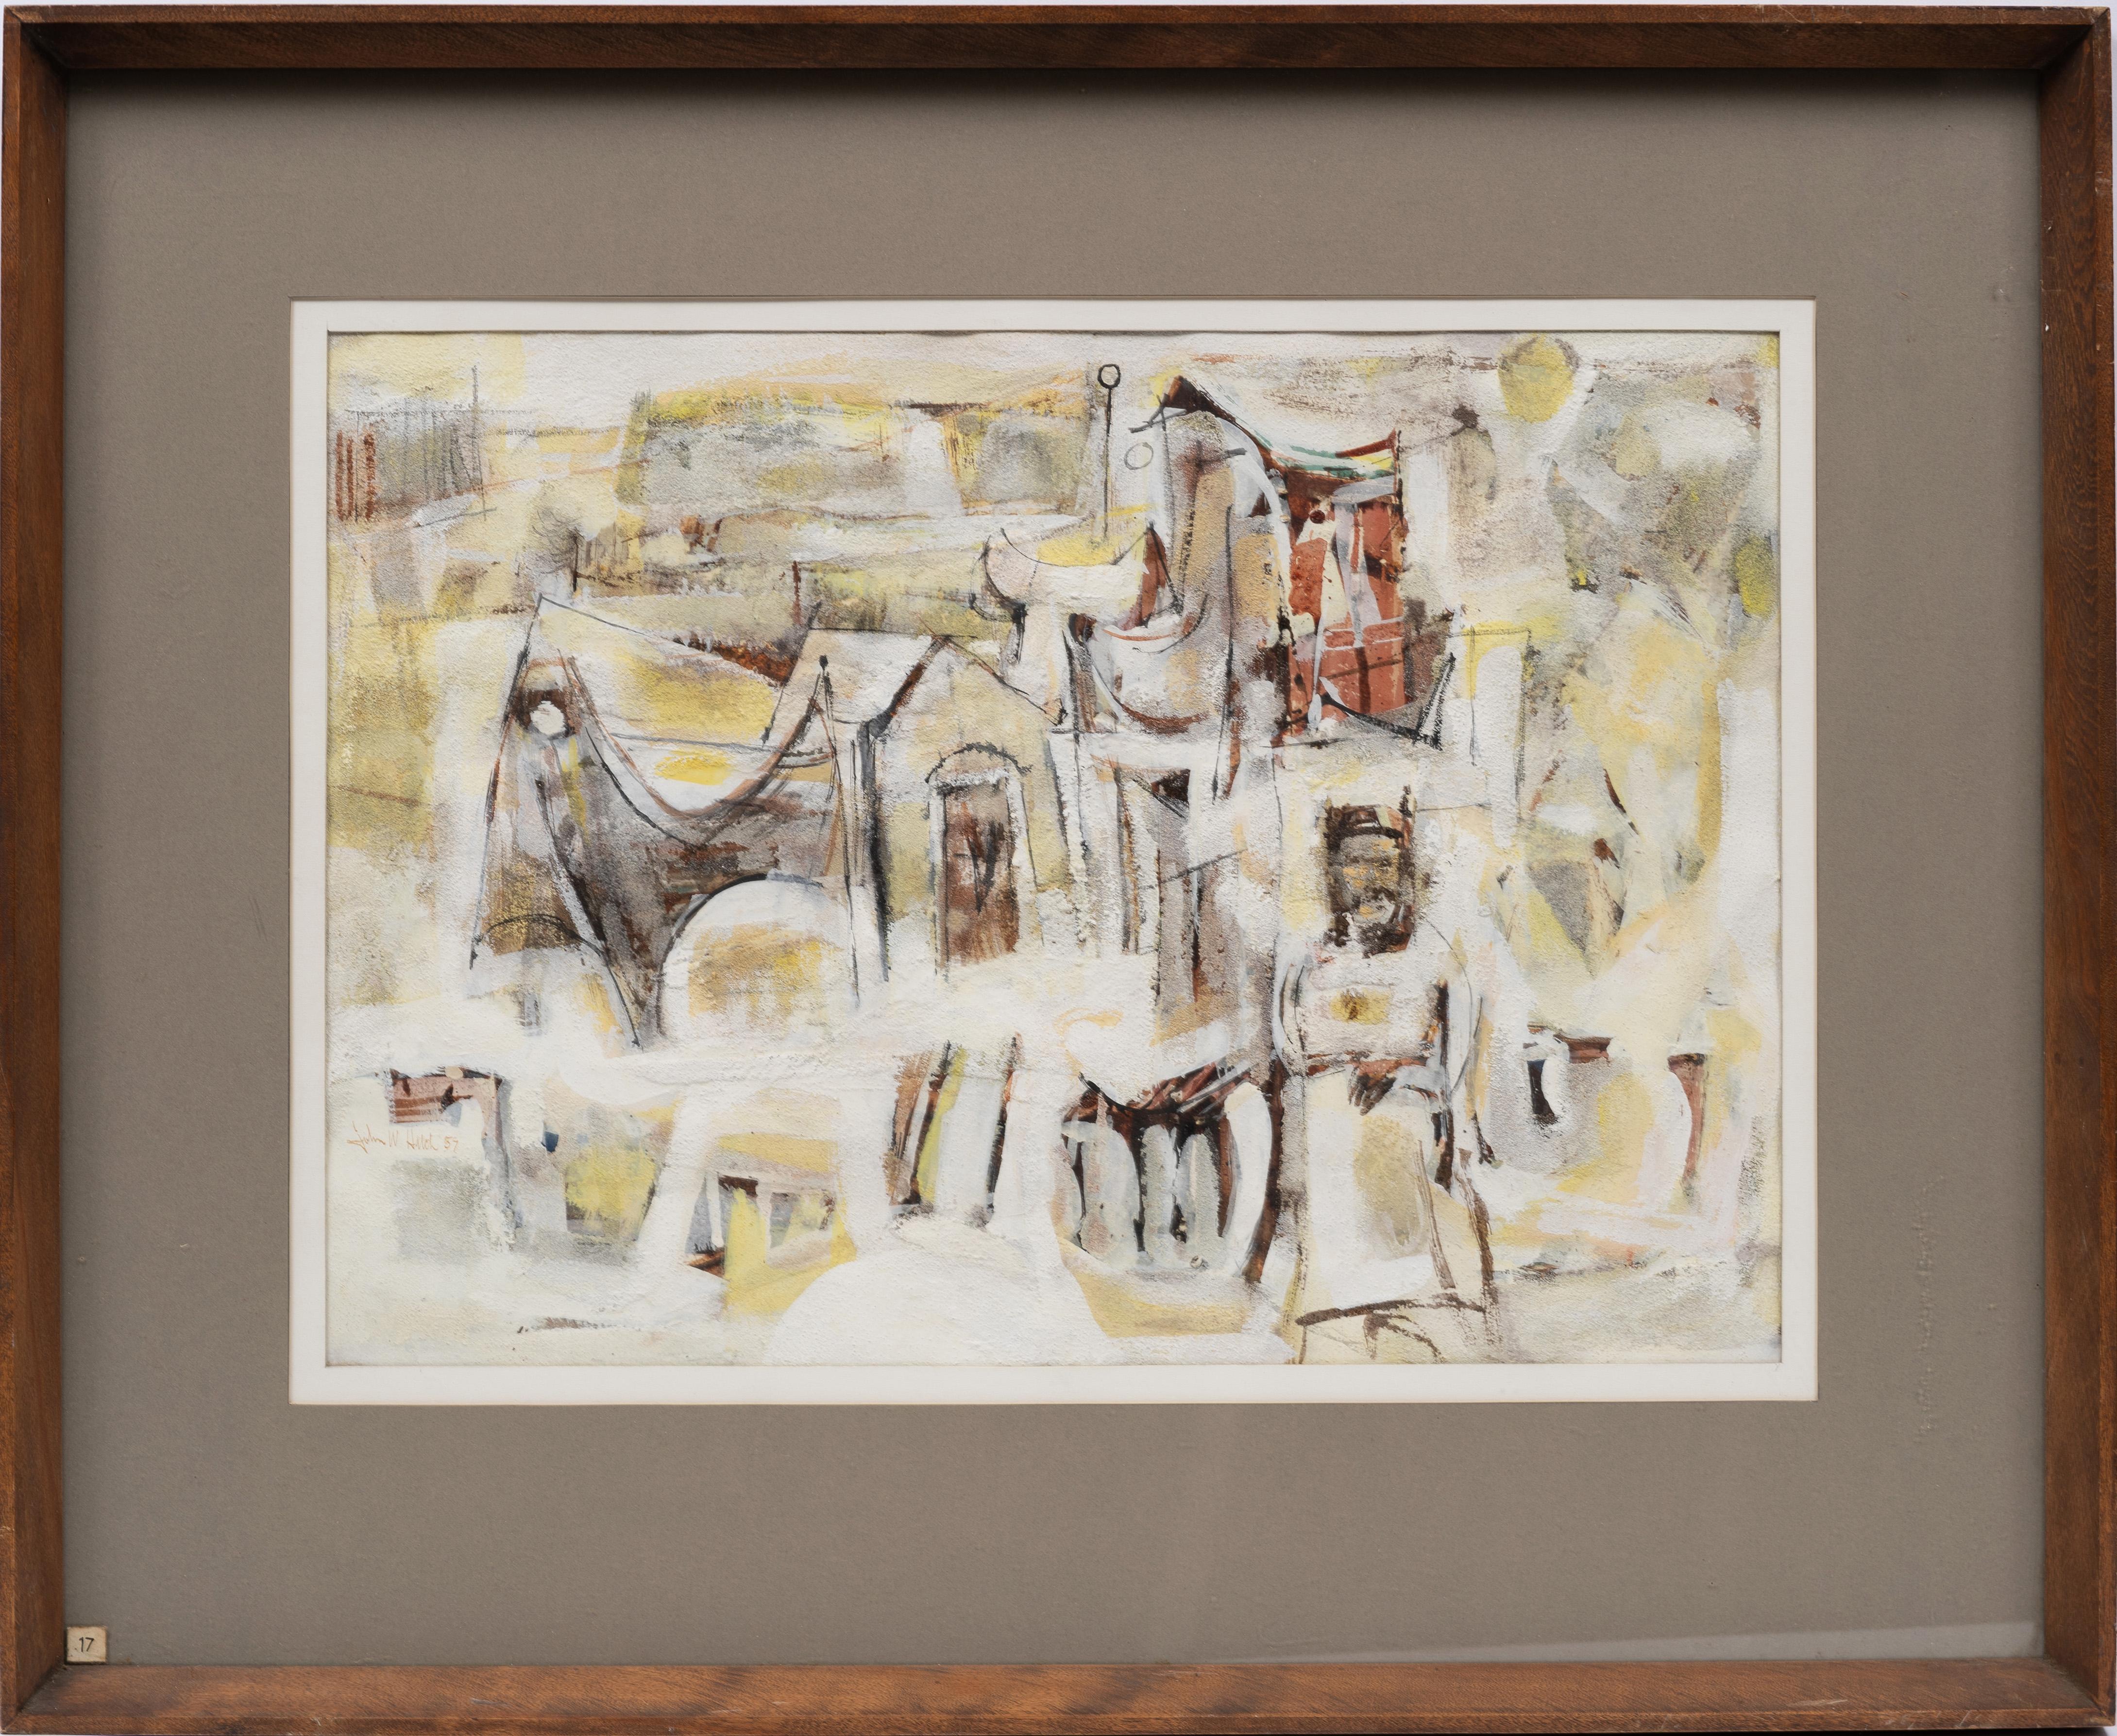 Antike architektonische Komposition der amerikanischen Moderne, abstraktes kubistisches Gemälde  – Painting von john w hatch